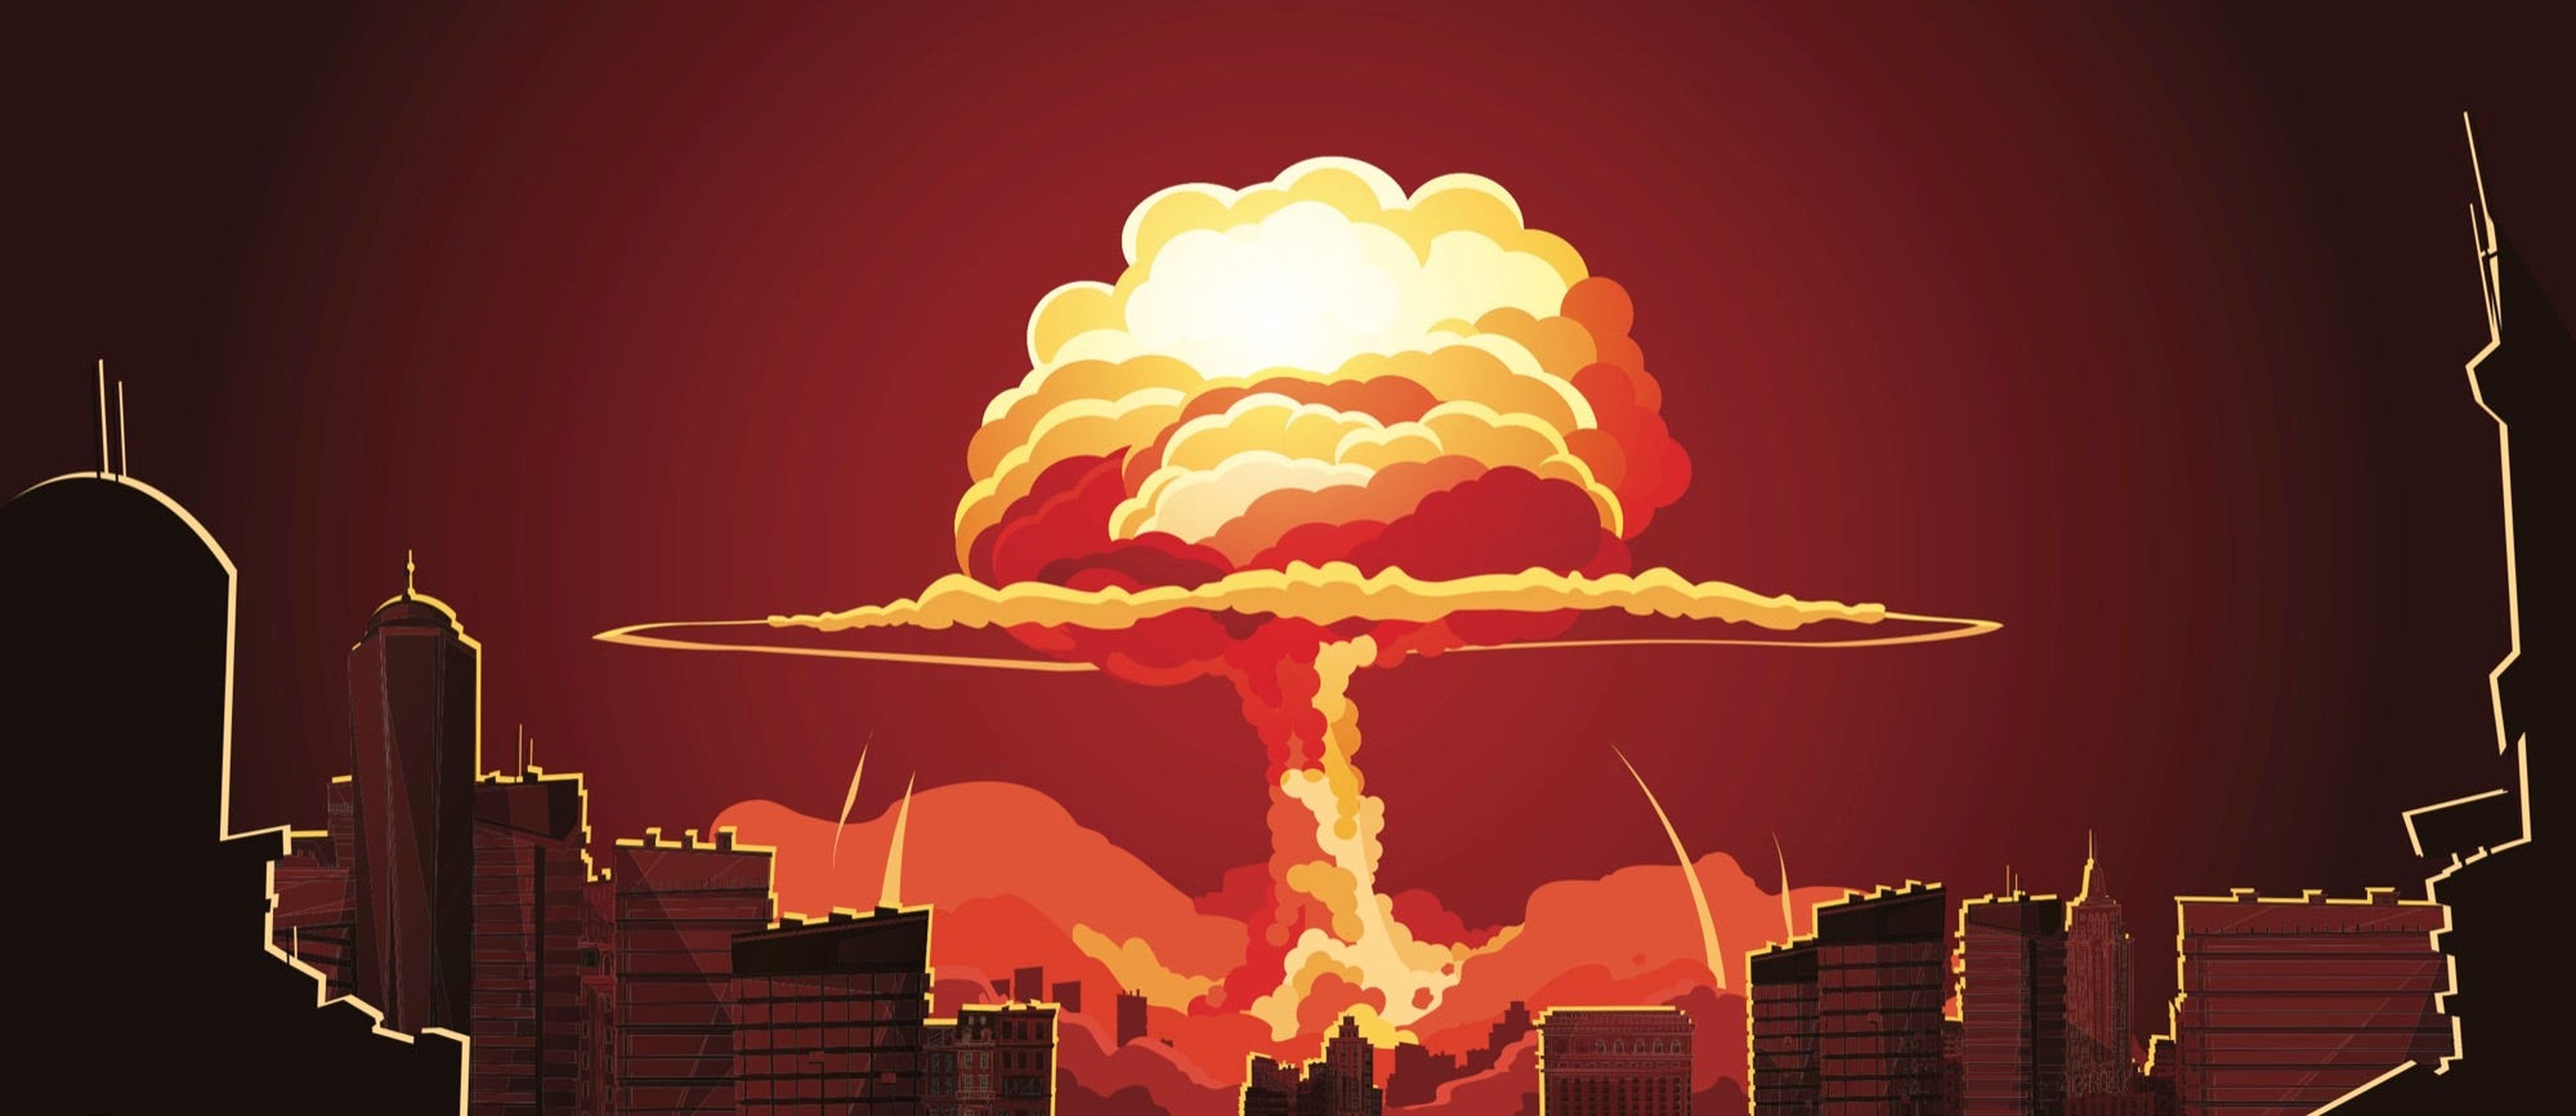 Una ilustración de una explosión nuclear en una ciudad.